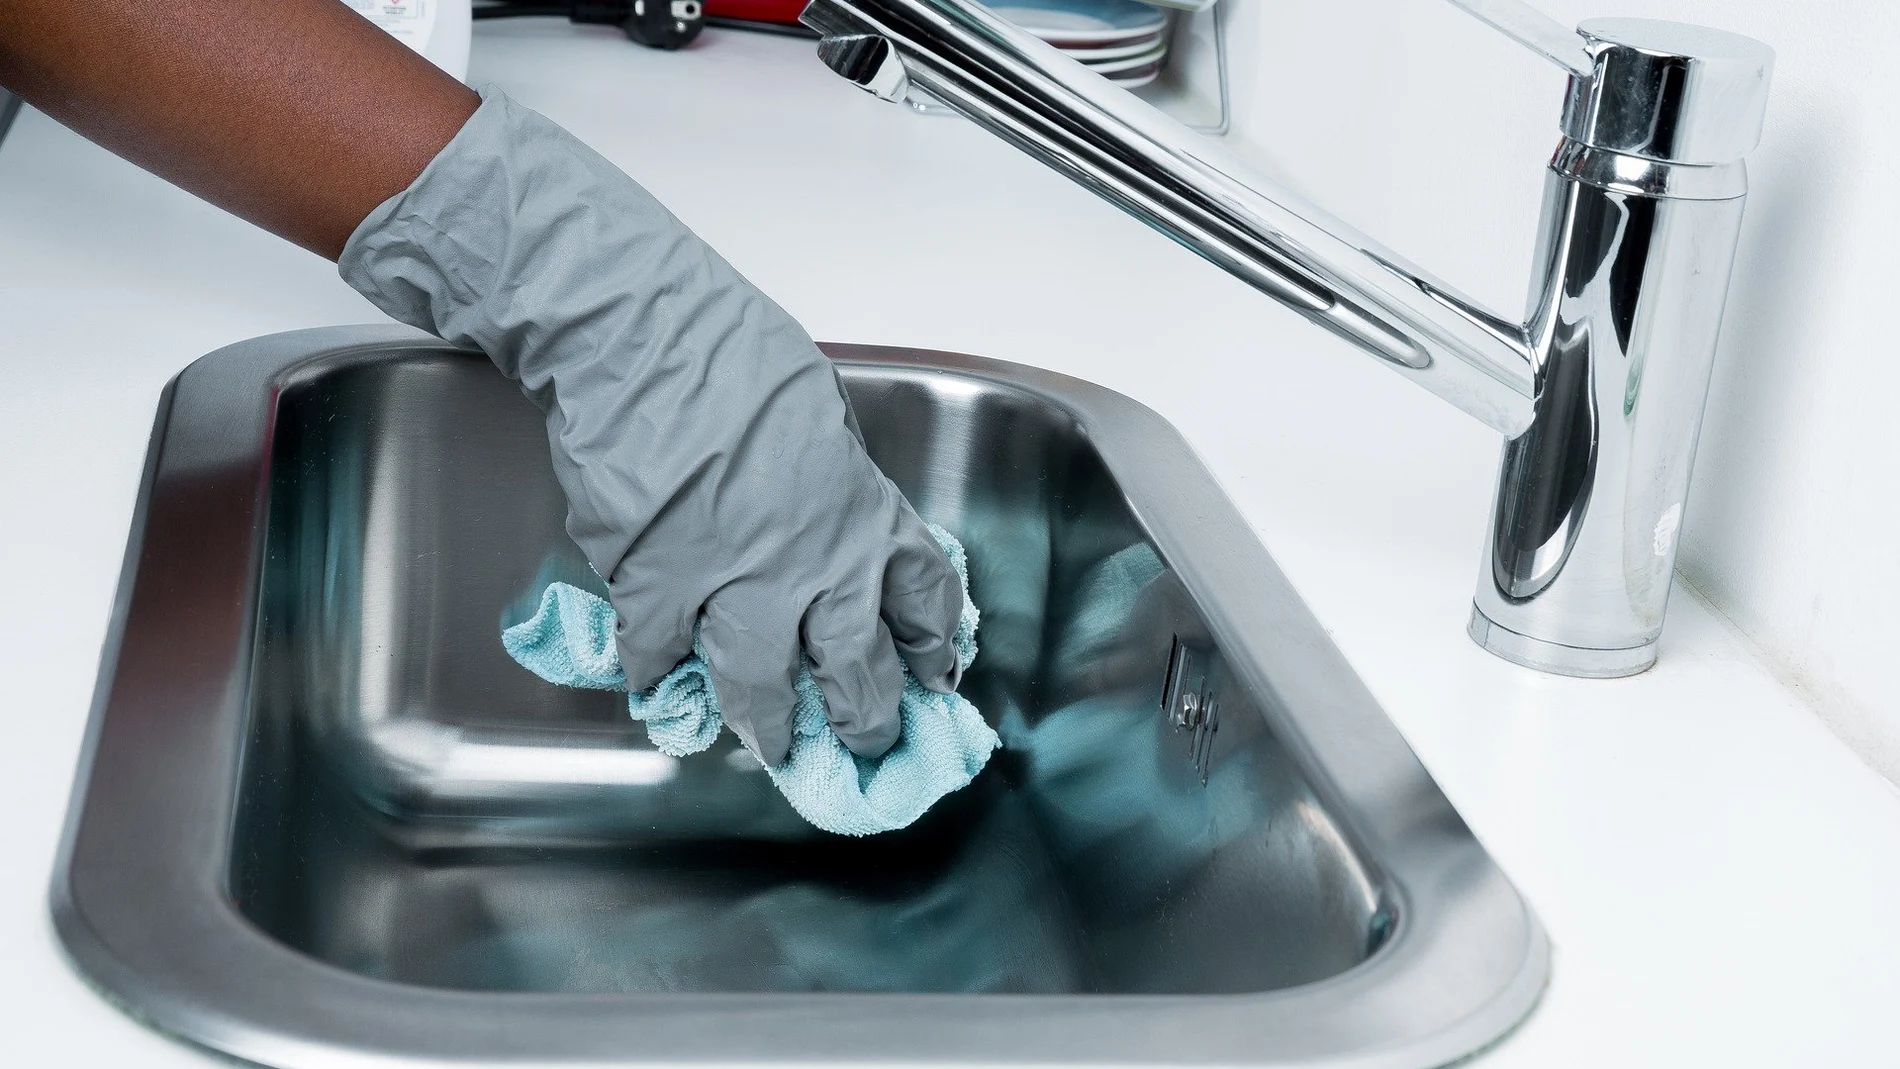 GUÍA Sanytol] Cómo debemos limpiar y desinfectar la cocina